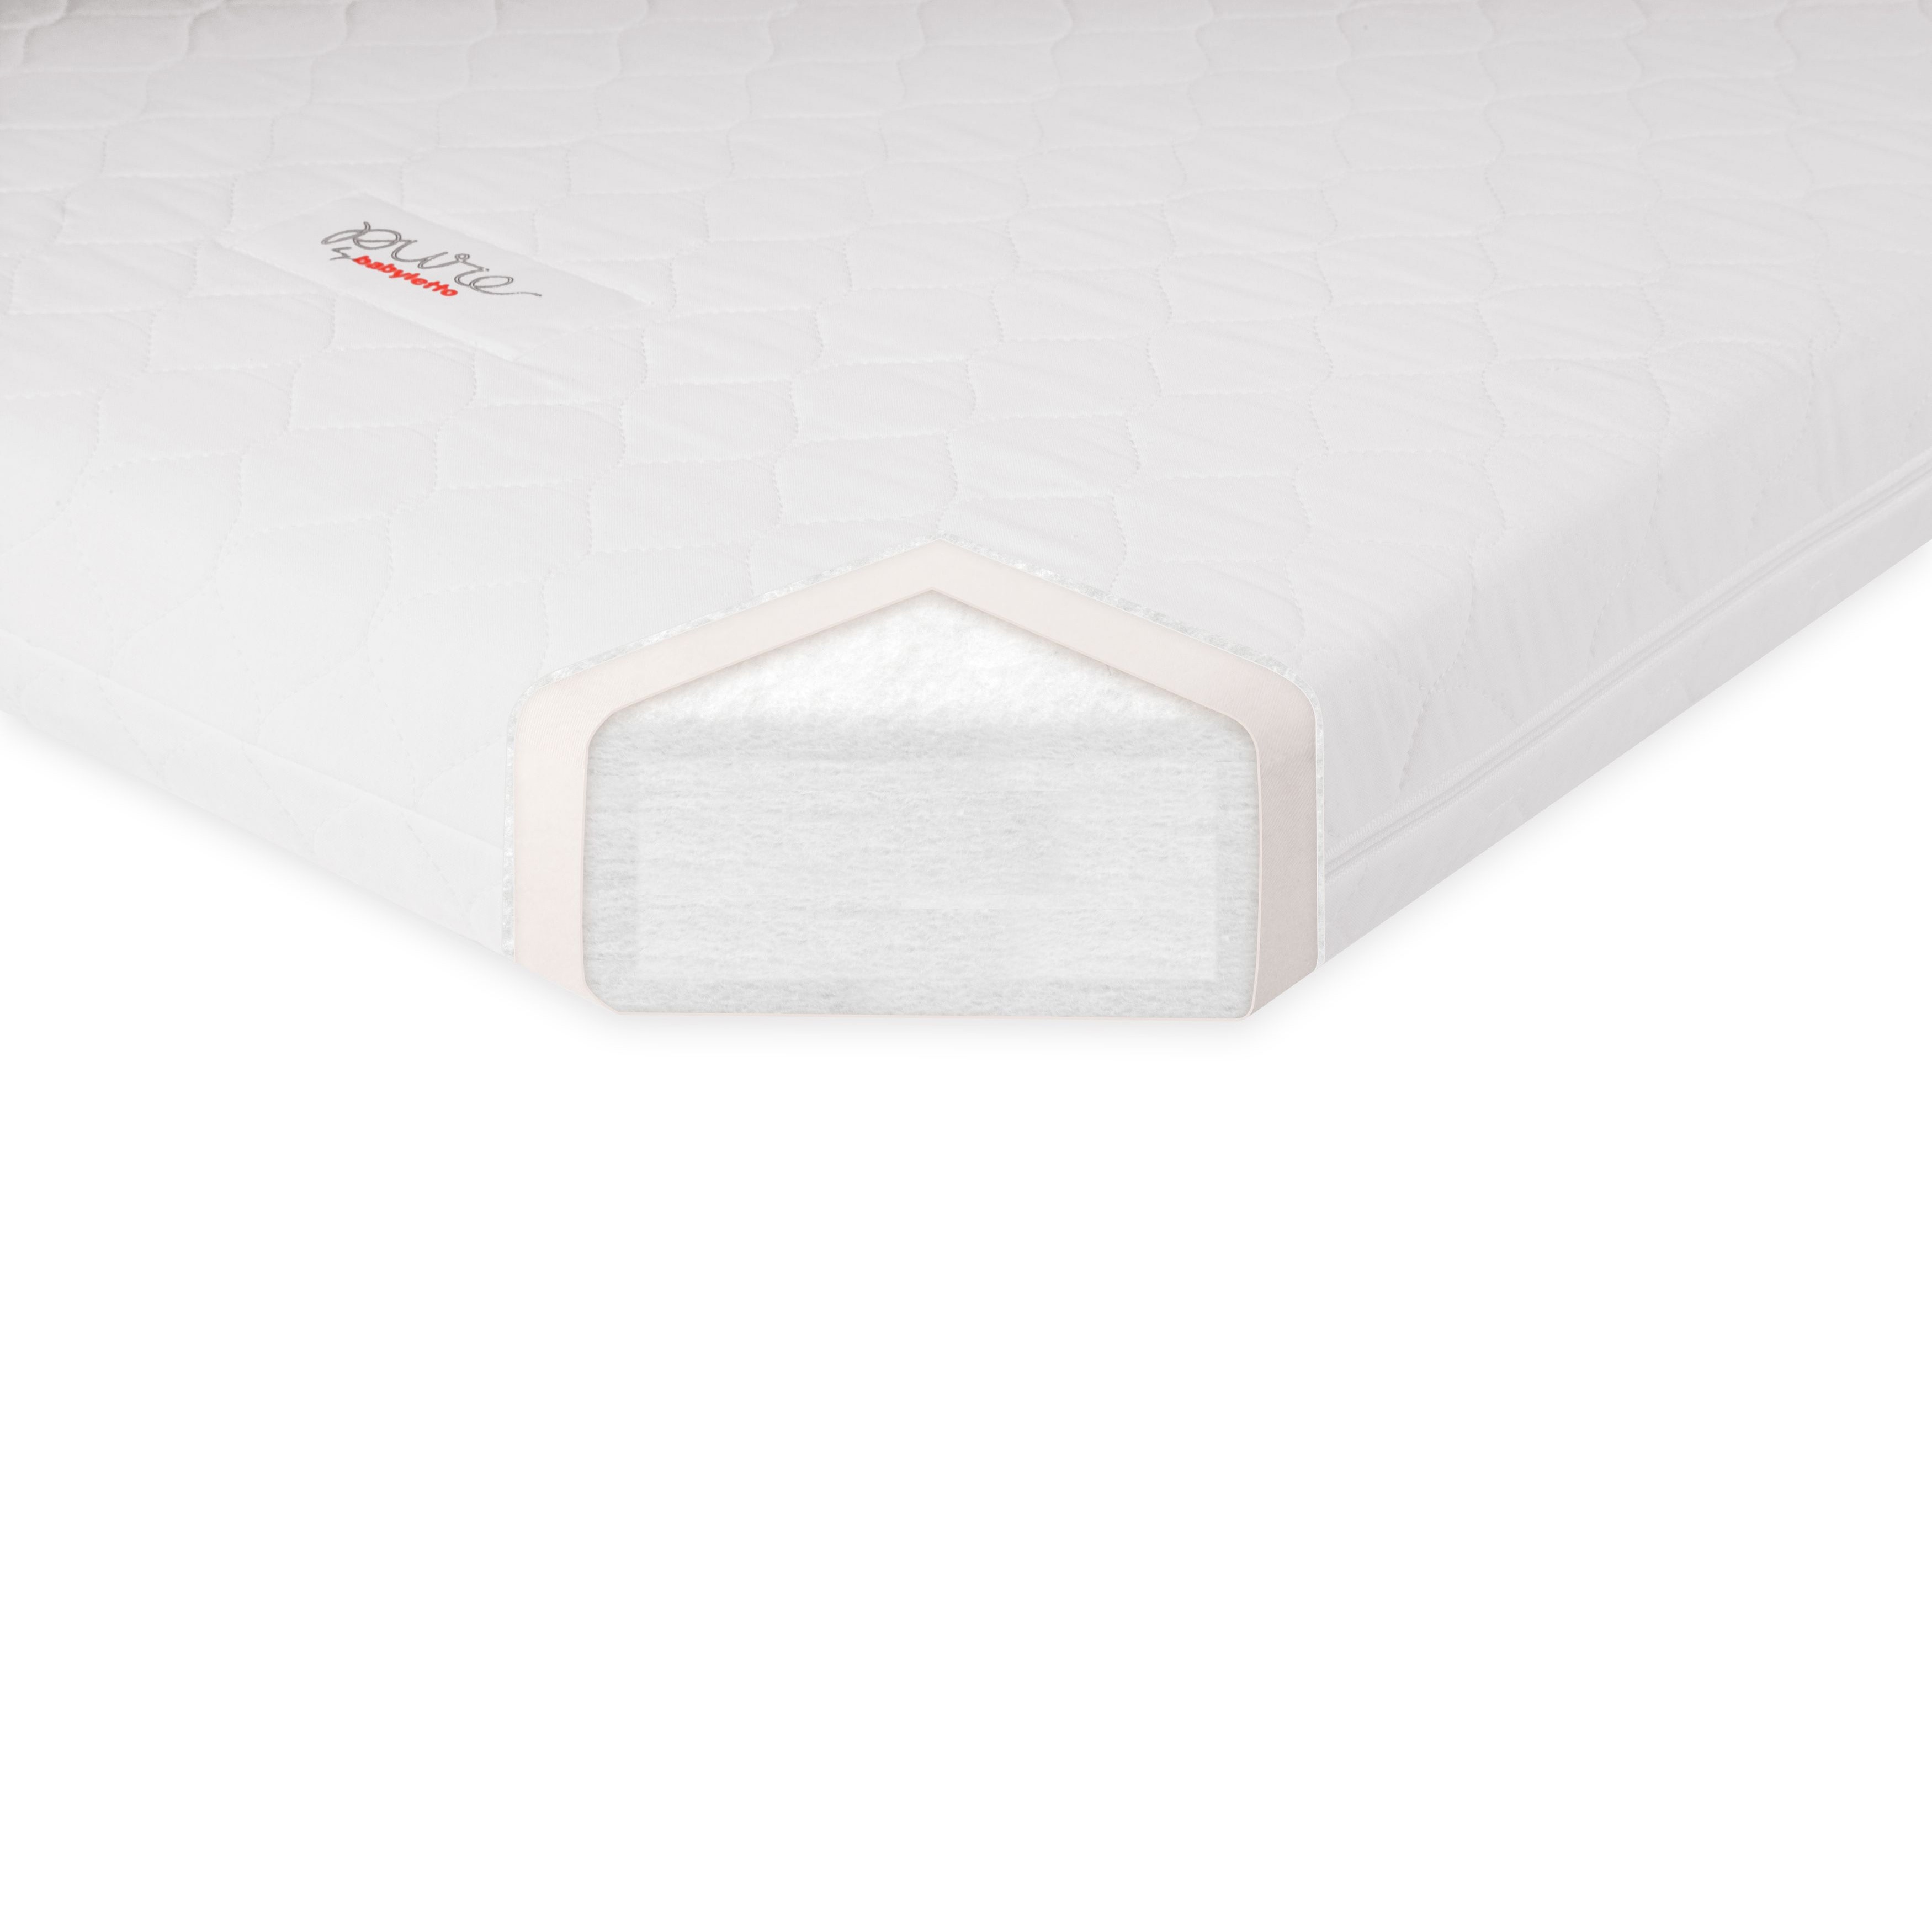 babyletto crib mattress size